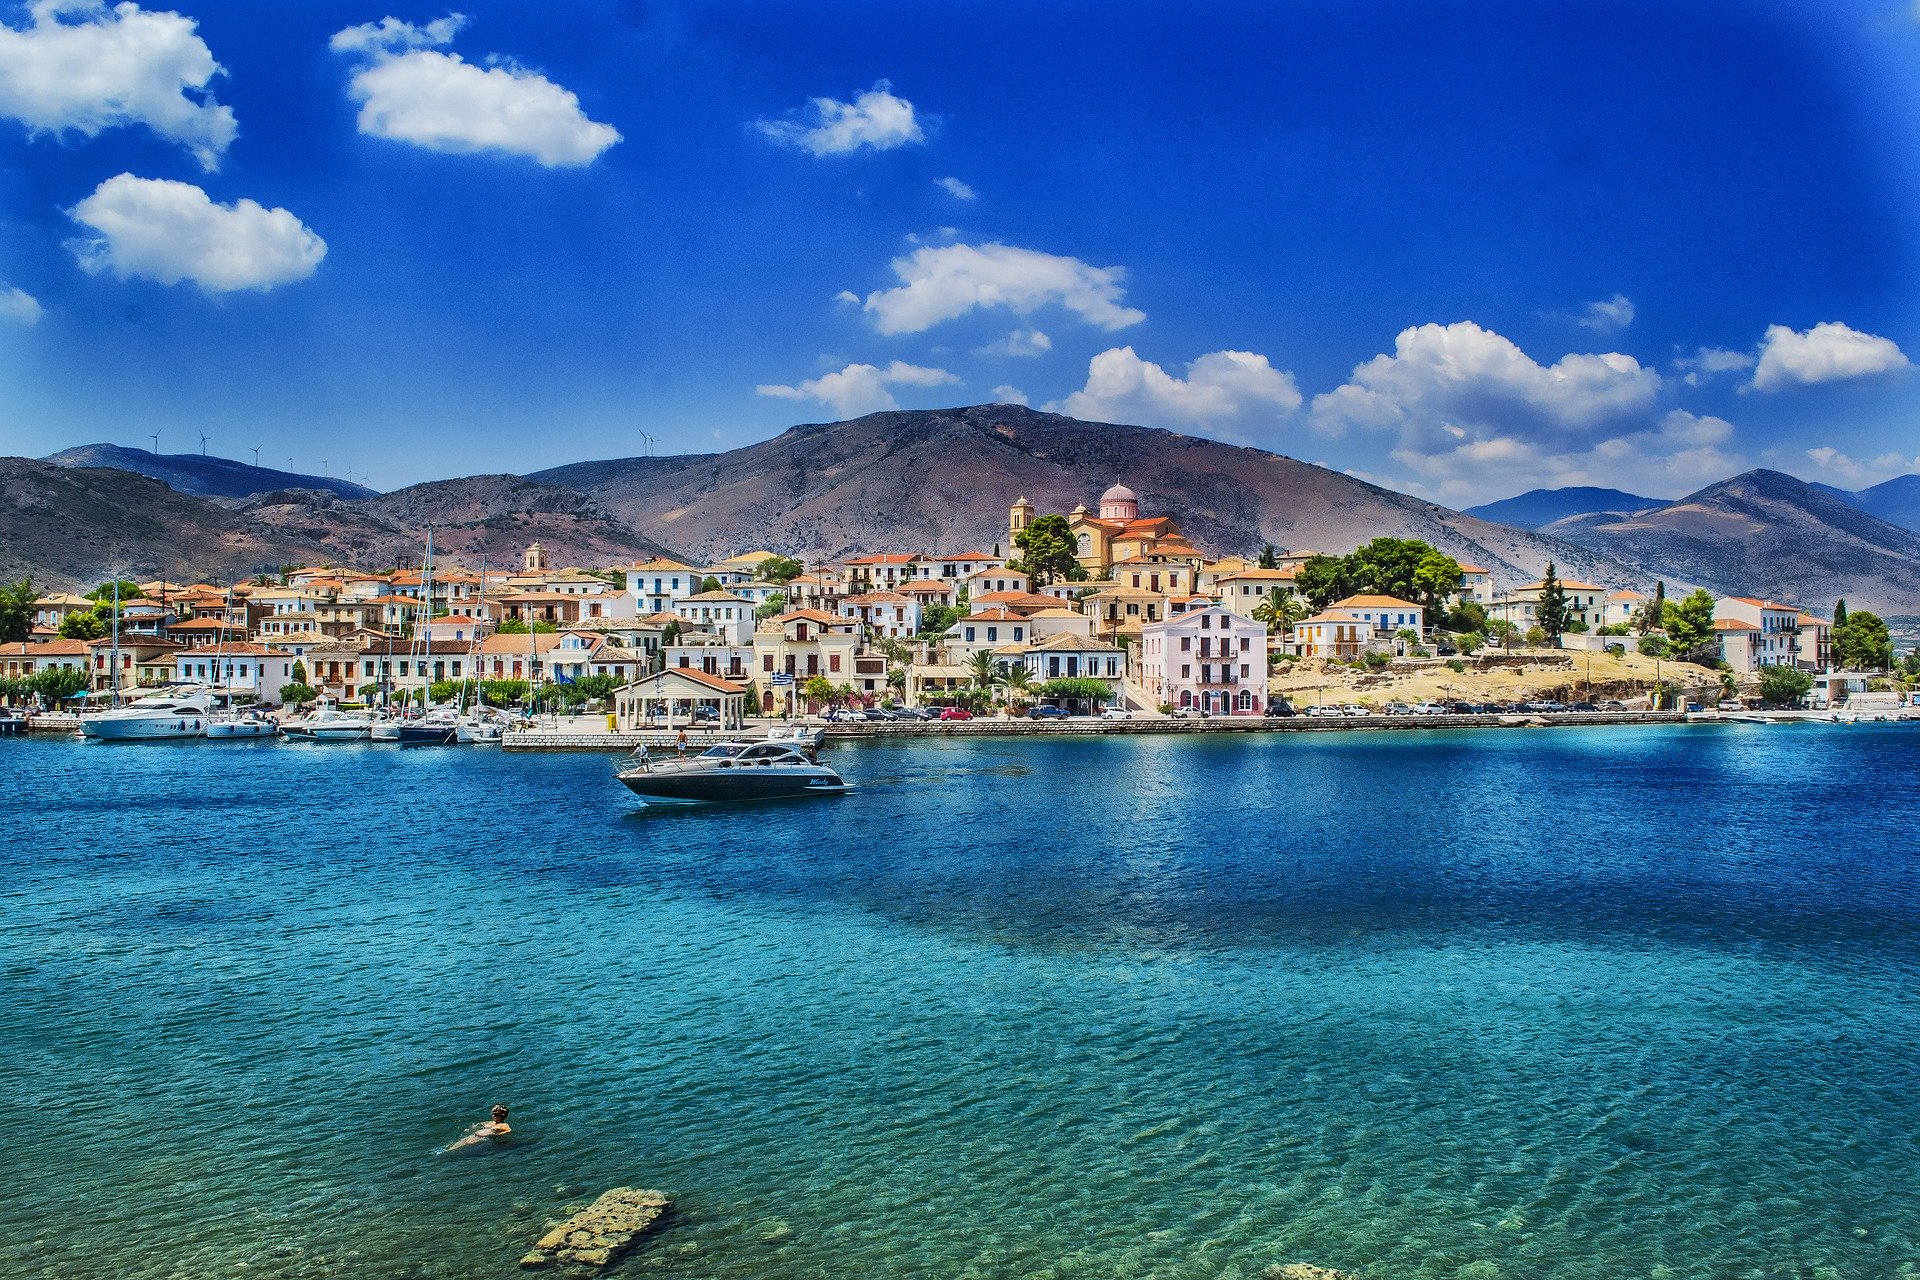 Τα ελληνικά νησιά στην διεθνή έκθεση τουρισμού BIT - International Travel Exhibition 2020